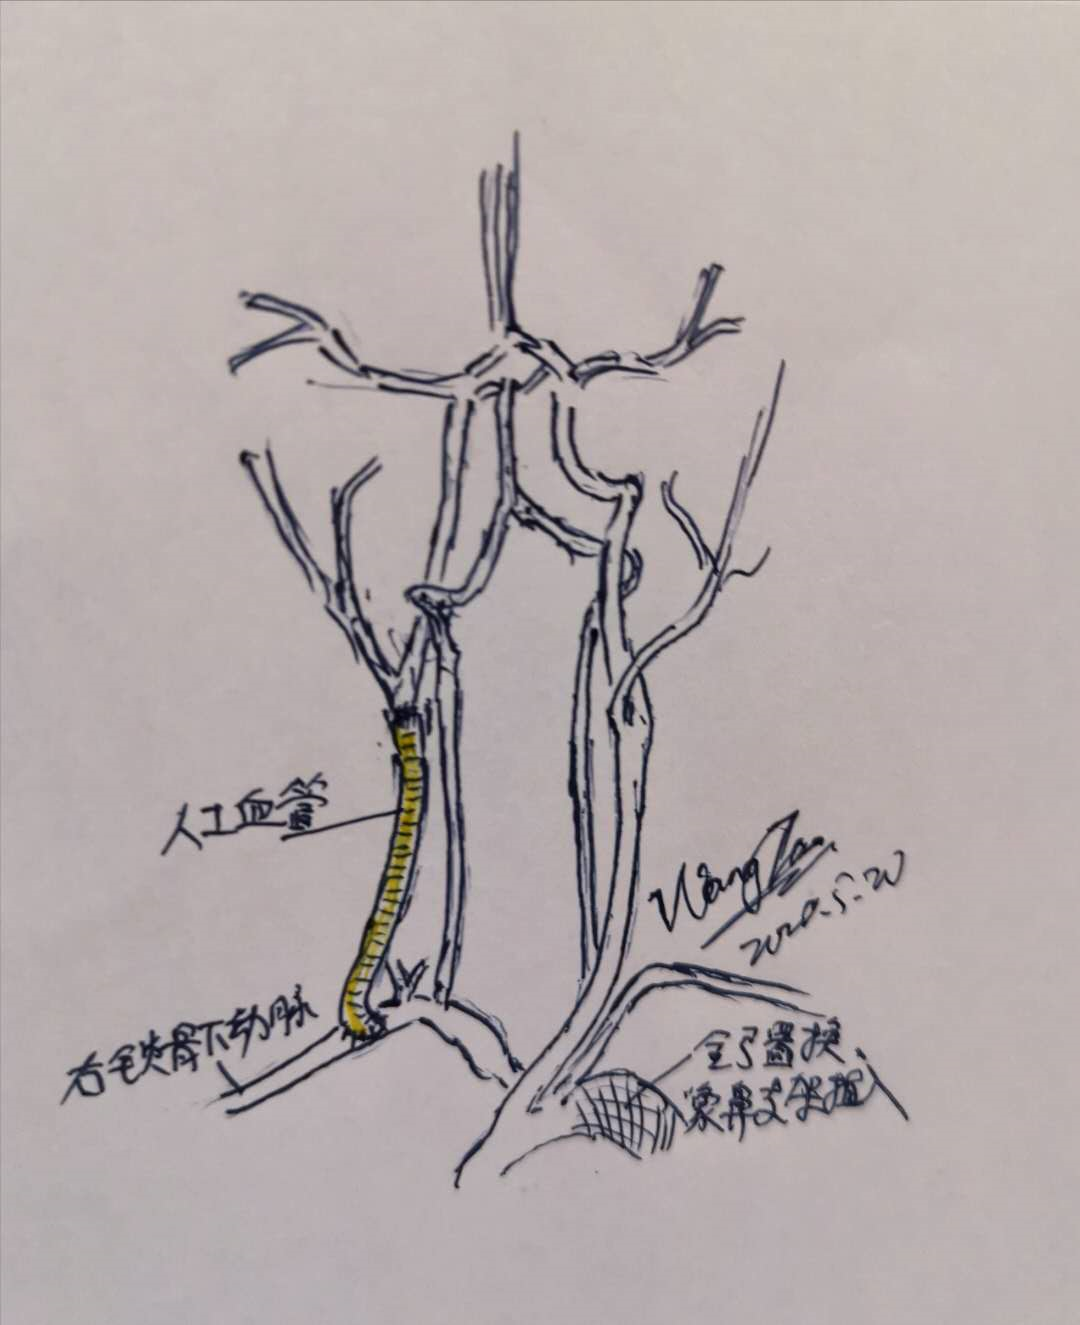 颈动脉-锁骨下动脉搭桥治疗高危颈总动脉闭塞